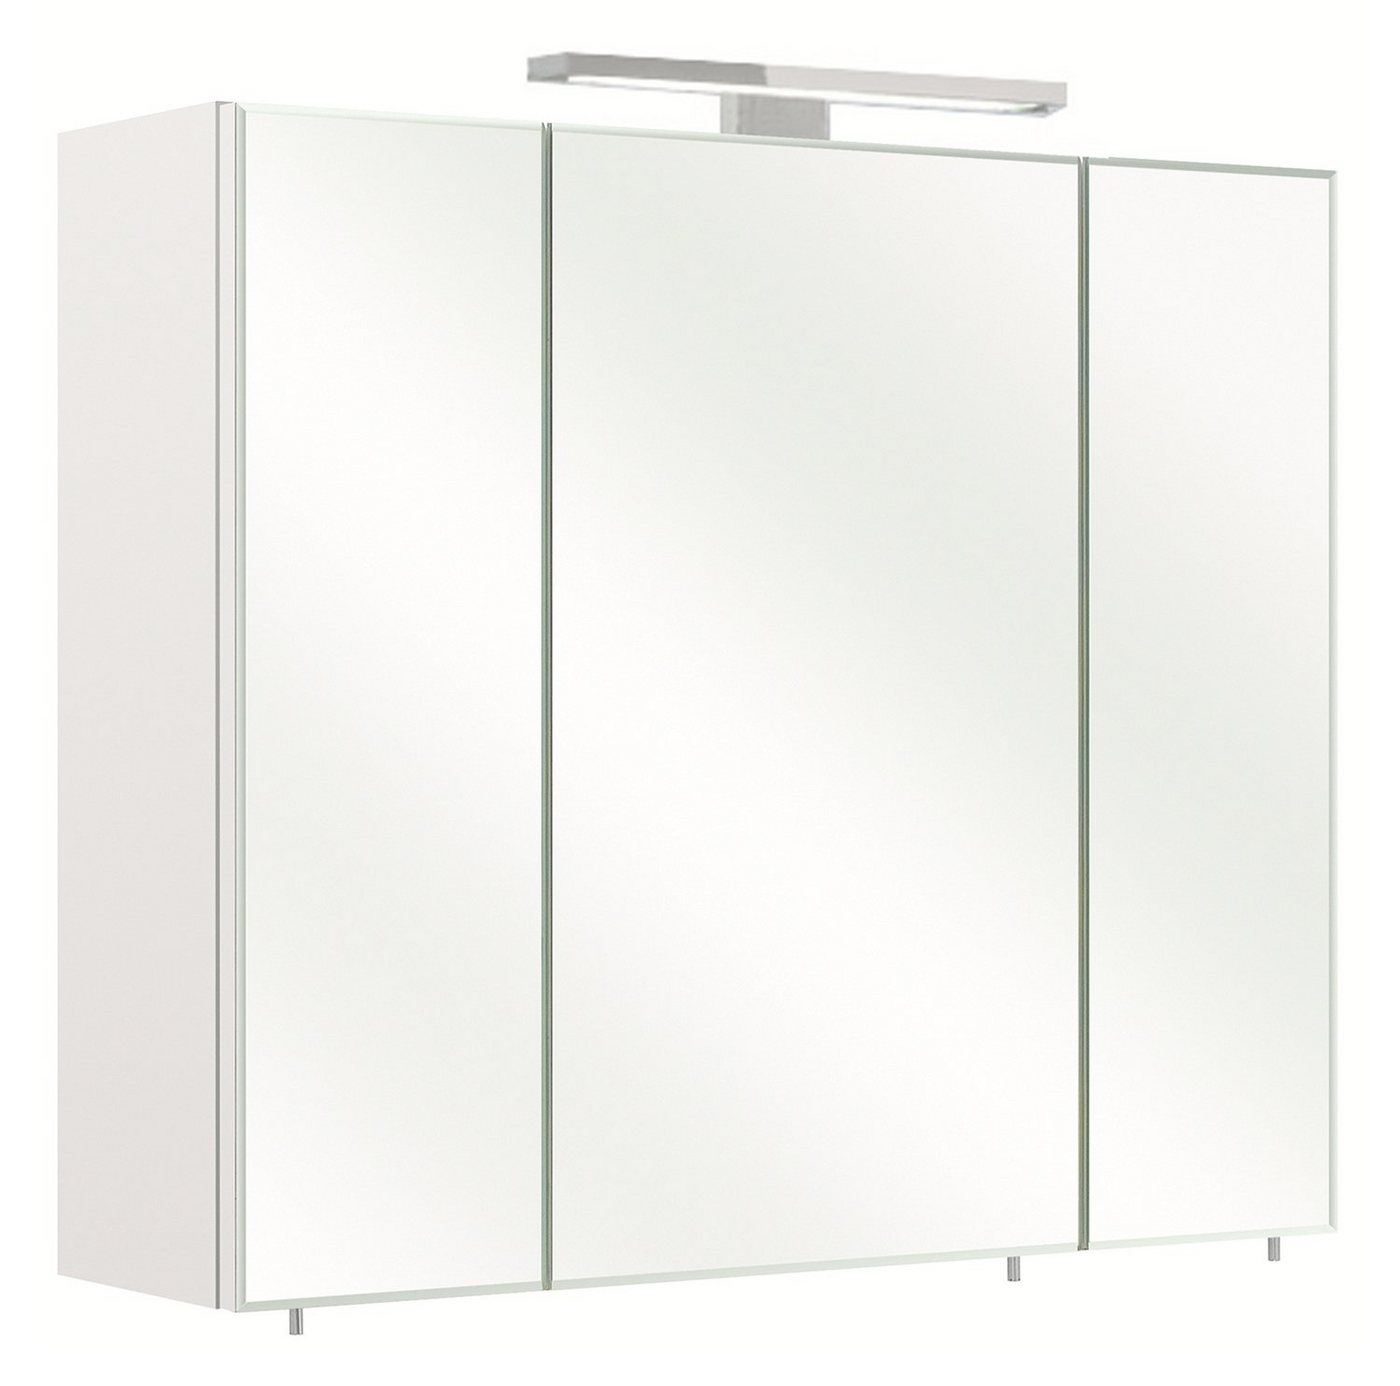 PELIPAL Spiegelschrank GERD, Weiß matt, 3-türig, mit LED-Aufsatzleuchte, Badmöbel, BxHxT 70 x 60 x 20 cm von PELIPAL